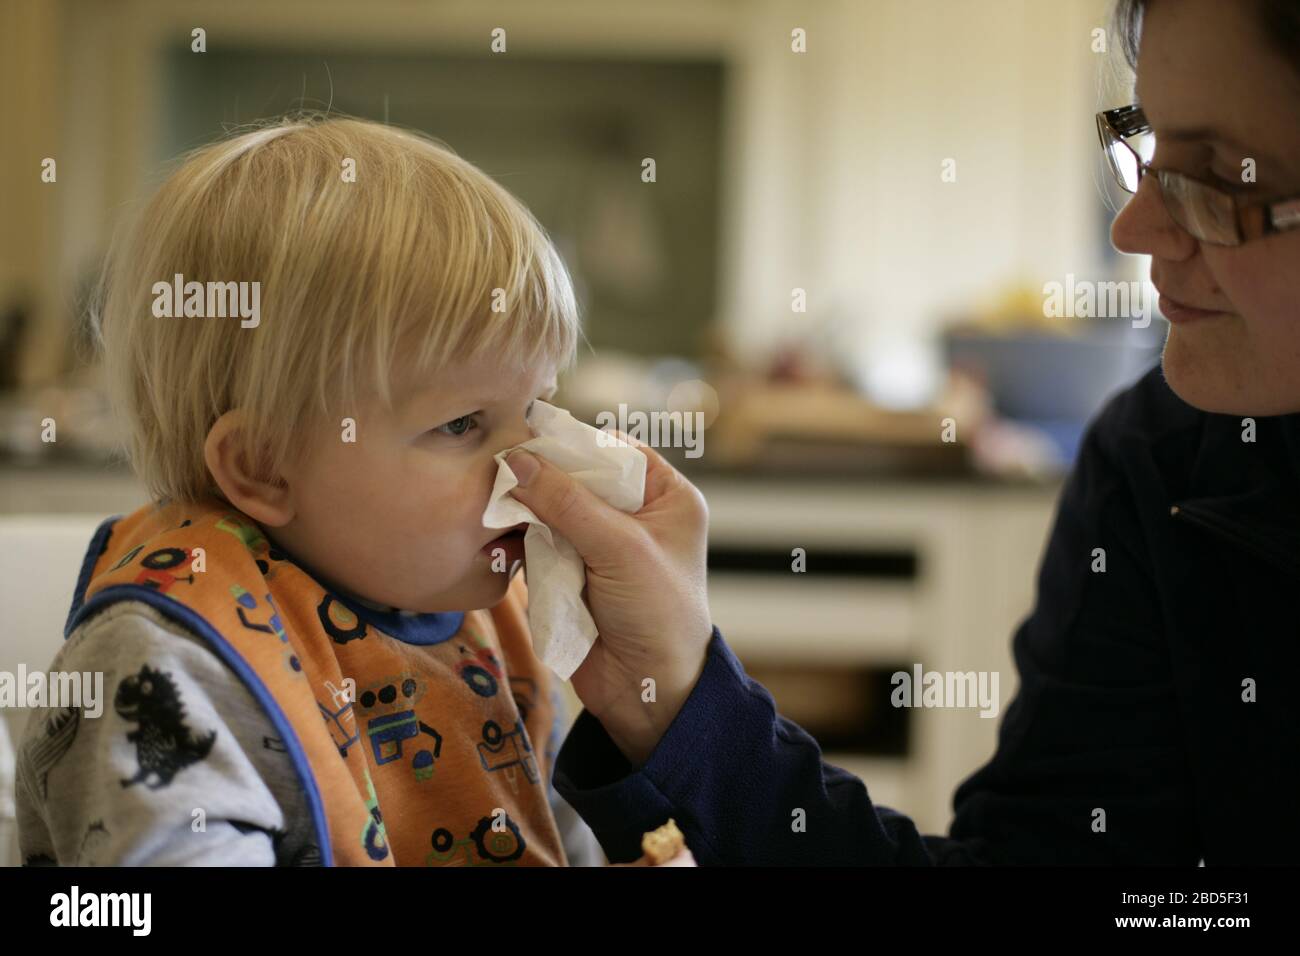 Mère aidant les enfants en bas âge à souffler le nez dans les tissus pendant la période d'auto-isolation pendant la pandémie de coronavirus COVID-19 de 2020 Banque D'Images